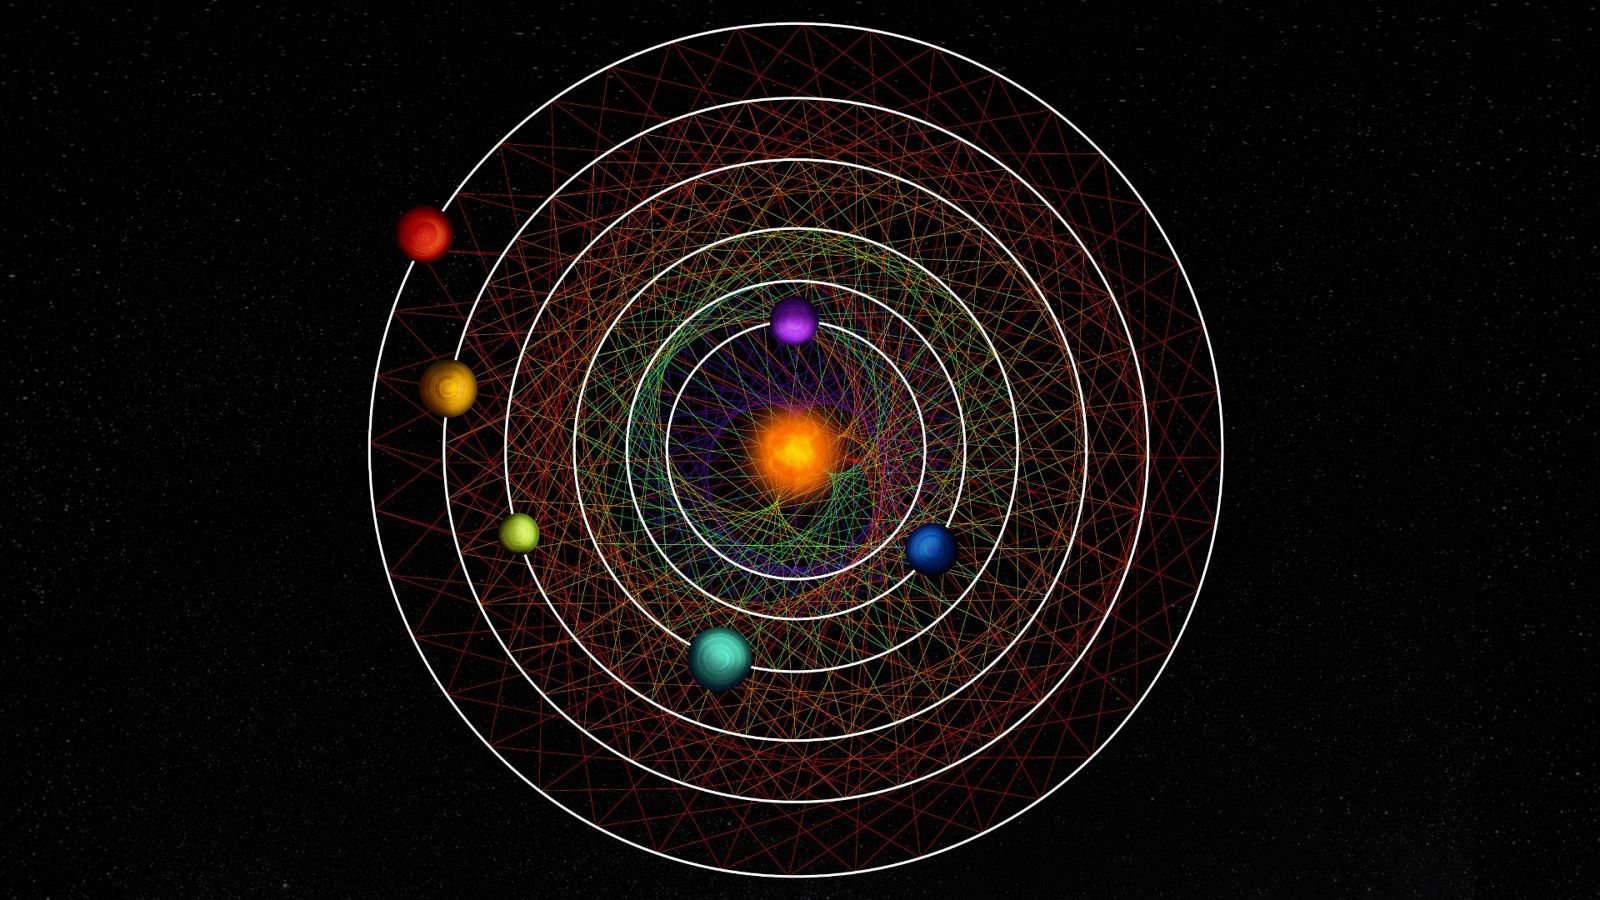 Descubierto un extraño sistema solar de seis planetas